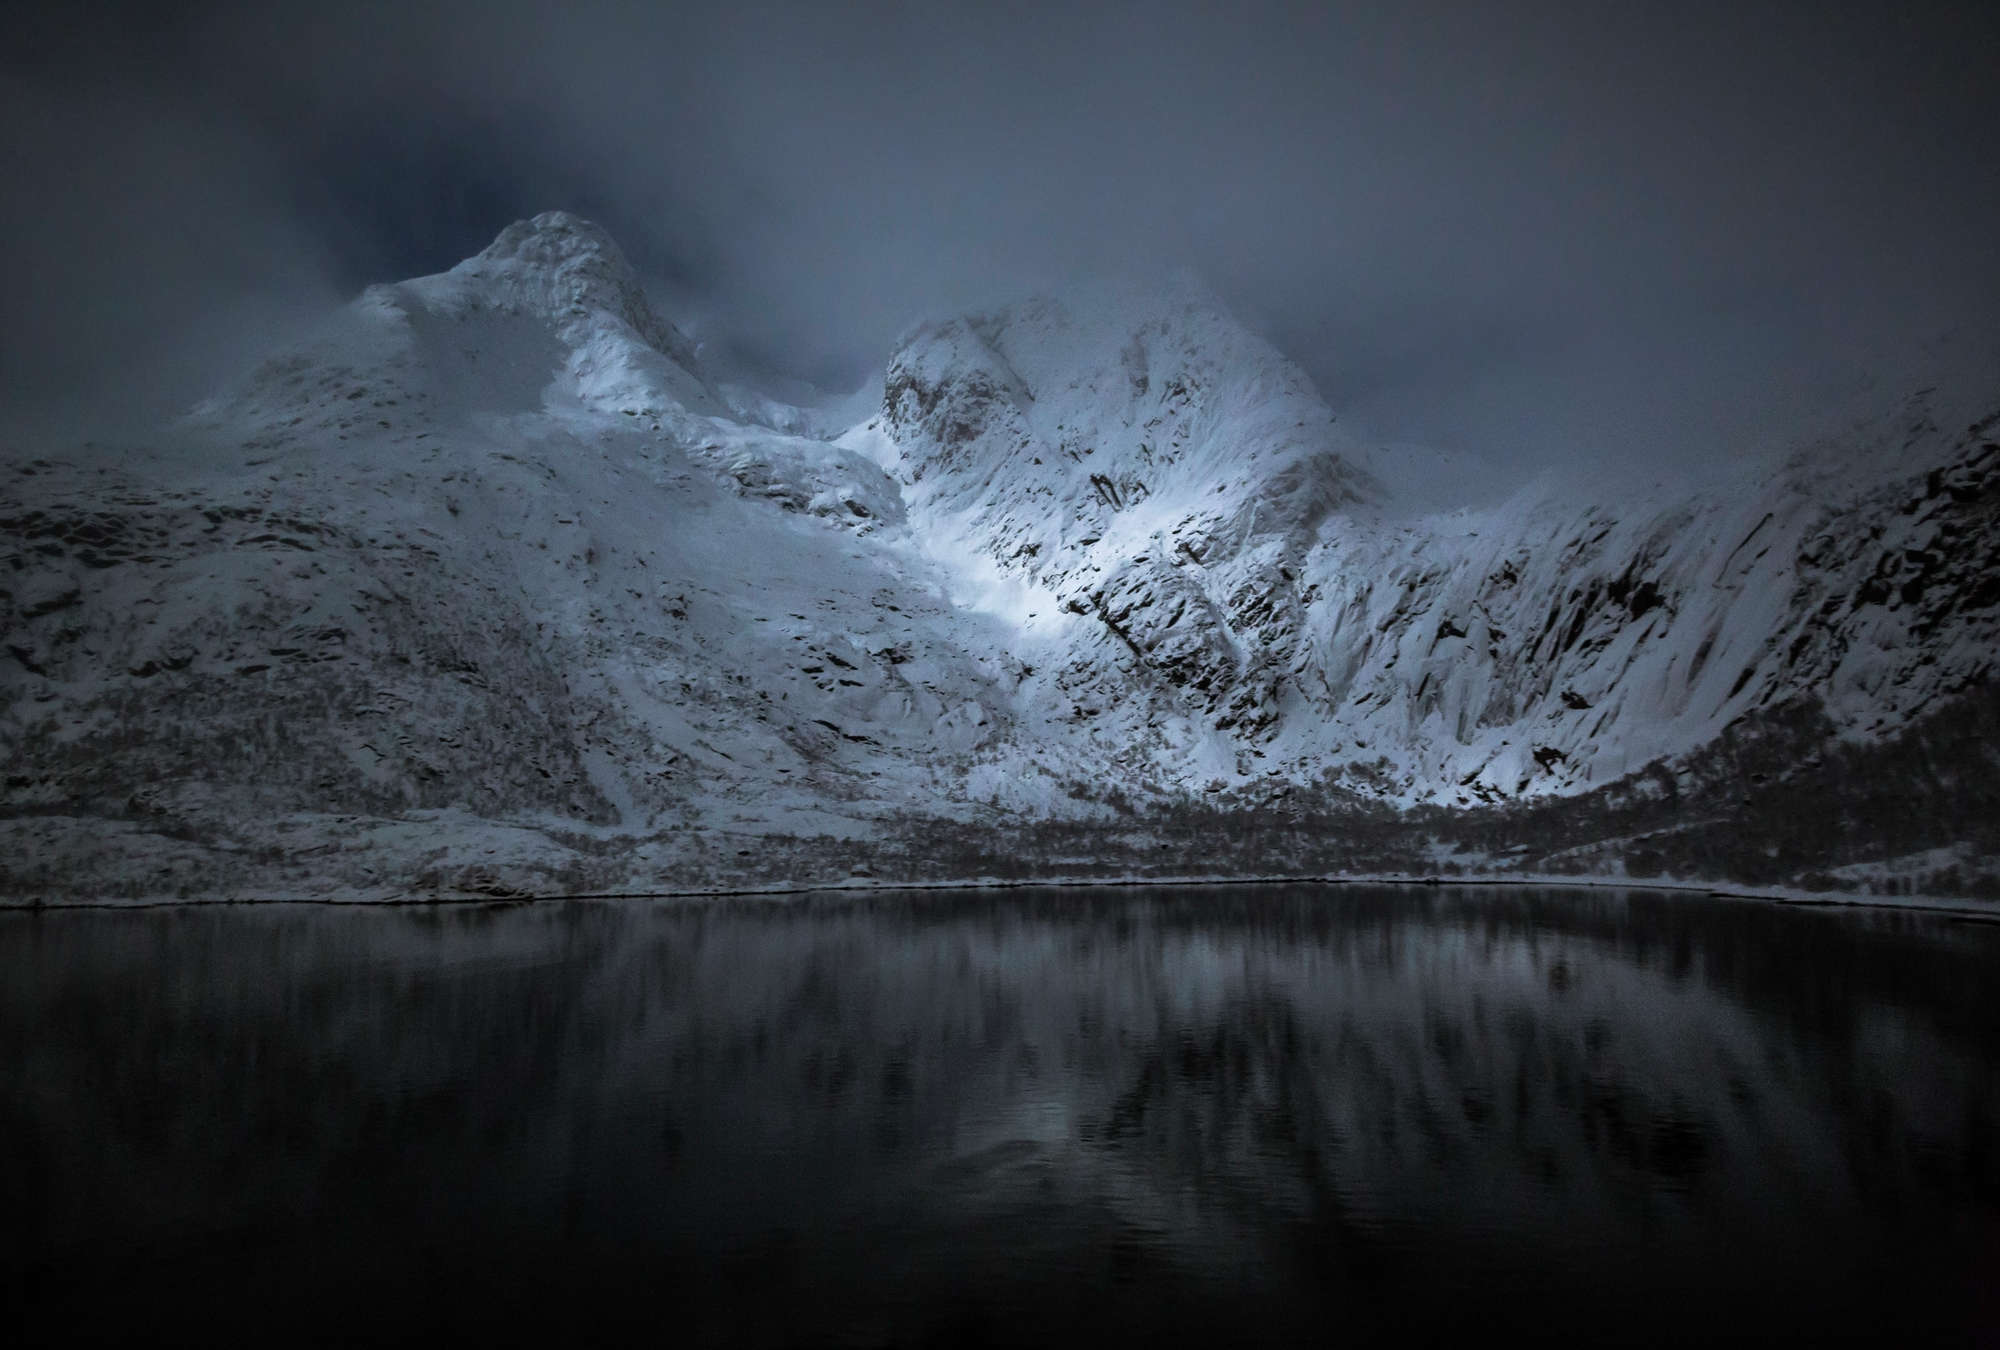             Bergen & Zee Behang - Lofoten in Noorwegen bij Nacht
        